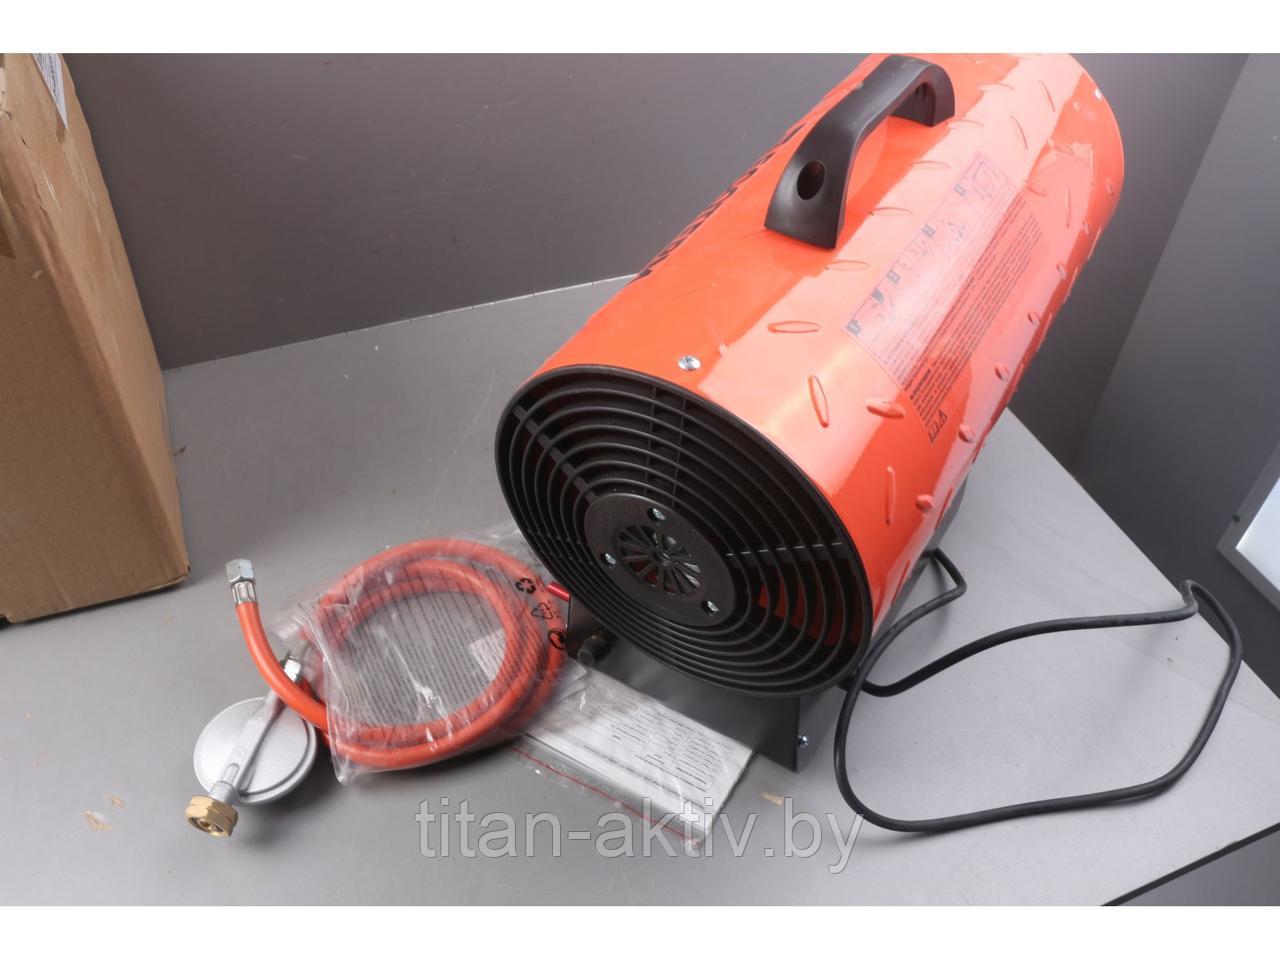 Нагреватель воздуха газовый Ecoterm GHD-301 уцененный (8619327500) (30 кВт, 650 куб.м/час)